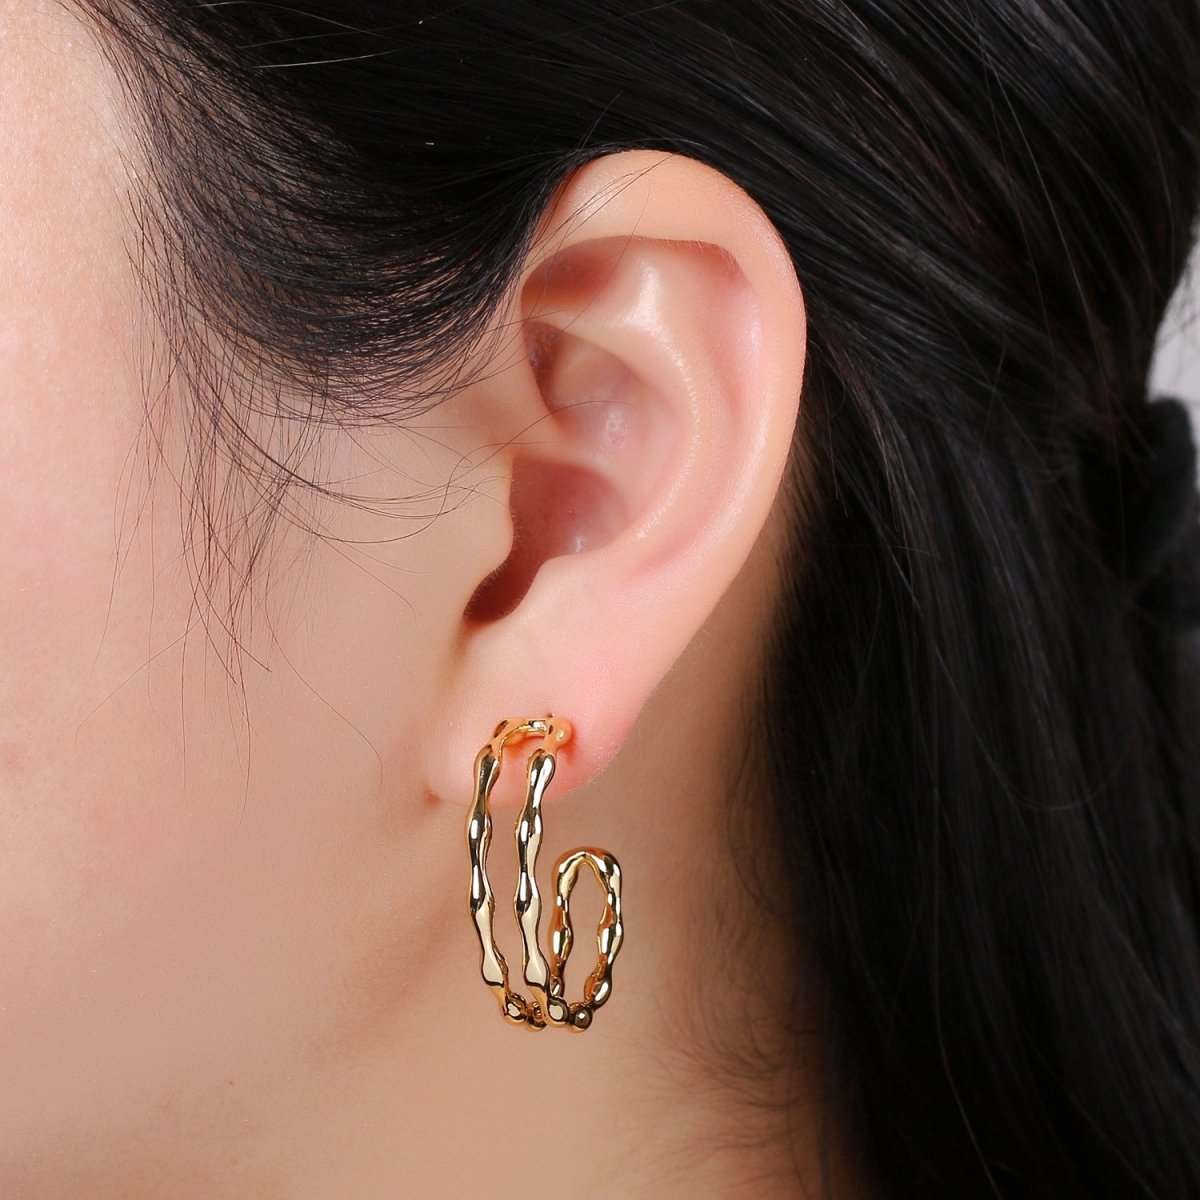 24k Gold Hoop Earring Jewelry, Chunky Hoop Earrings, Gold Hammered Hoops, 28x33mm Hoop Earrings Q-426 - DLUXCA